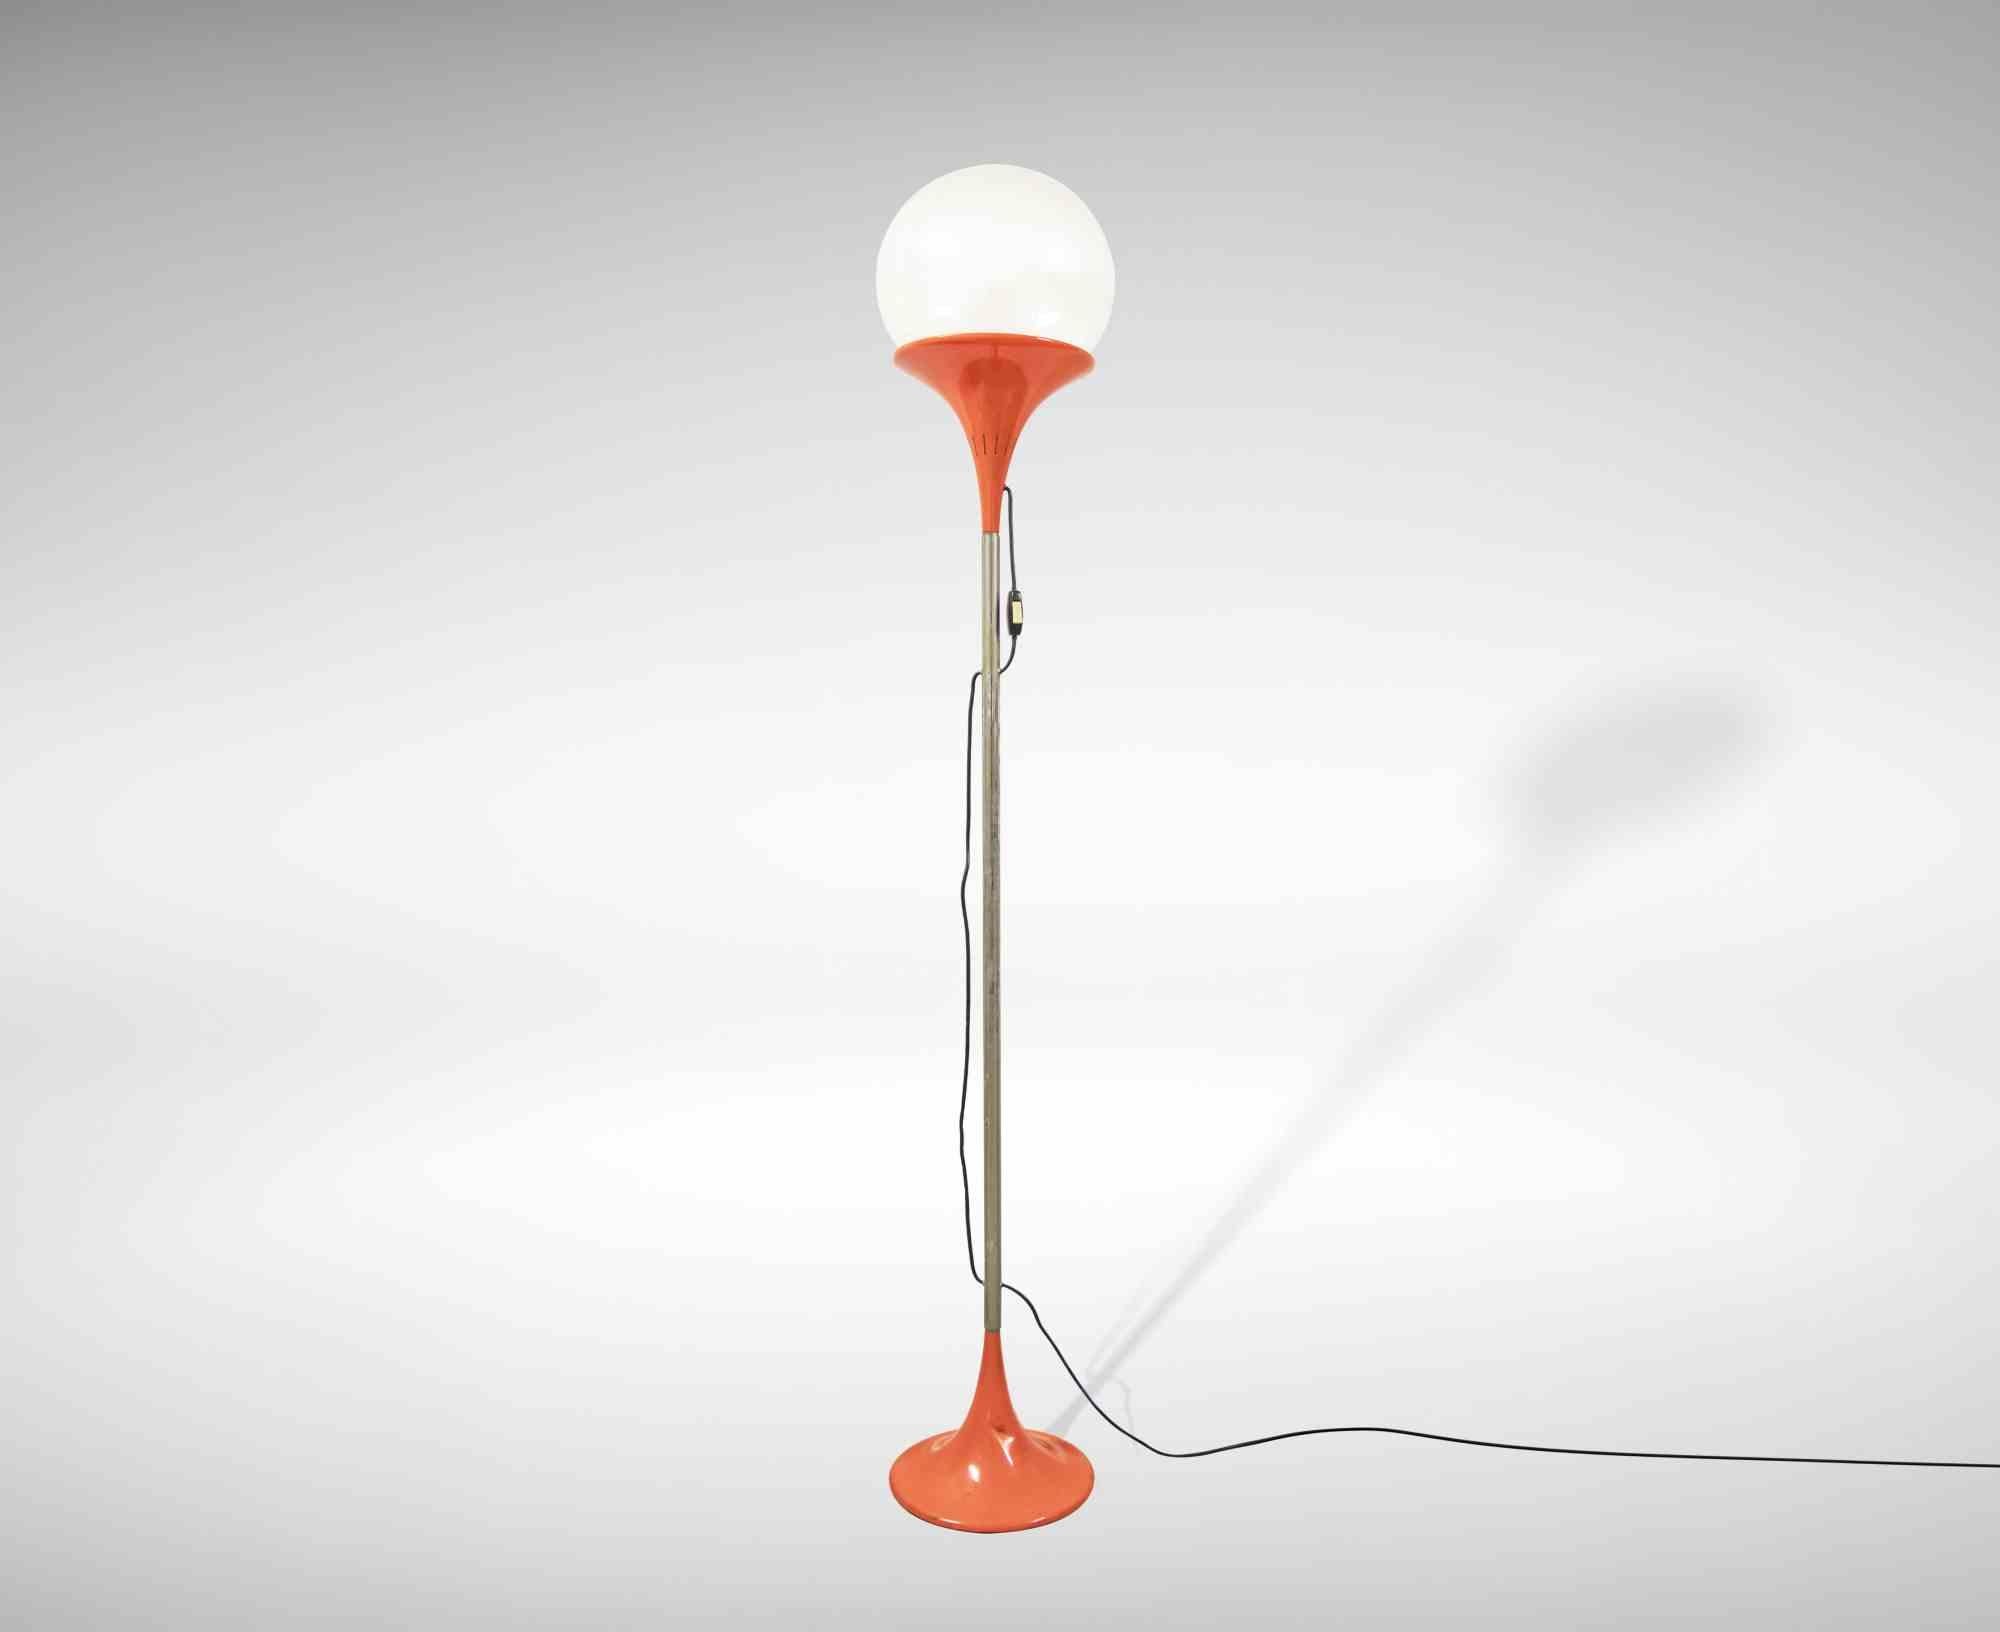 Le lampadaire vintage est une lampe design originale réalisée dans la moitié des années 1970 par Carlo Nason pour Space Age.

Une belle lampe vintage en verre de Murano et métal avec des détails orange.

Bonnes conditions.

Carlo Nason (1935